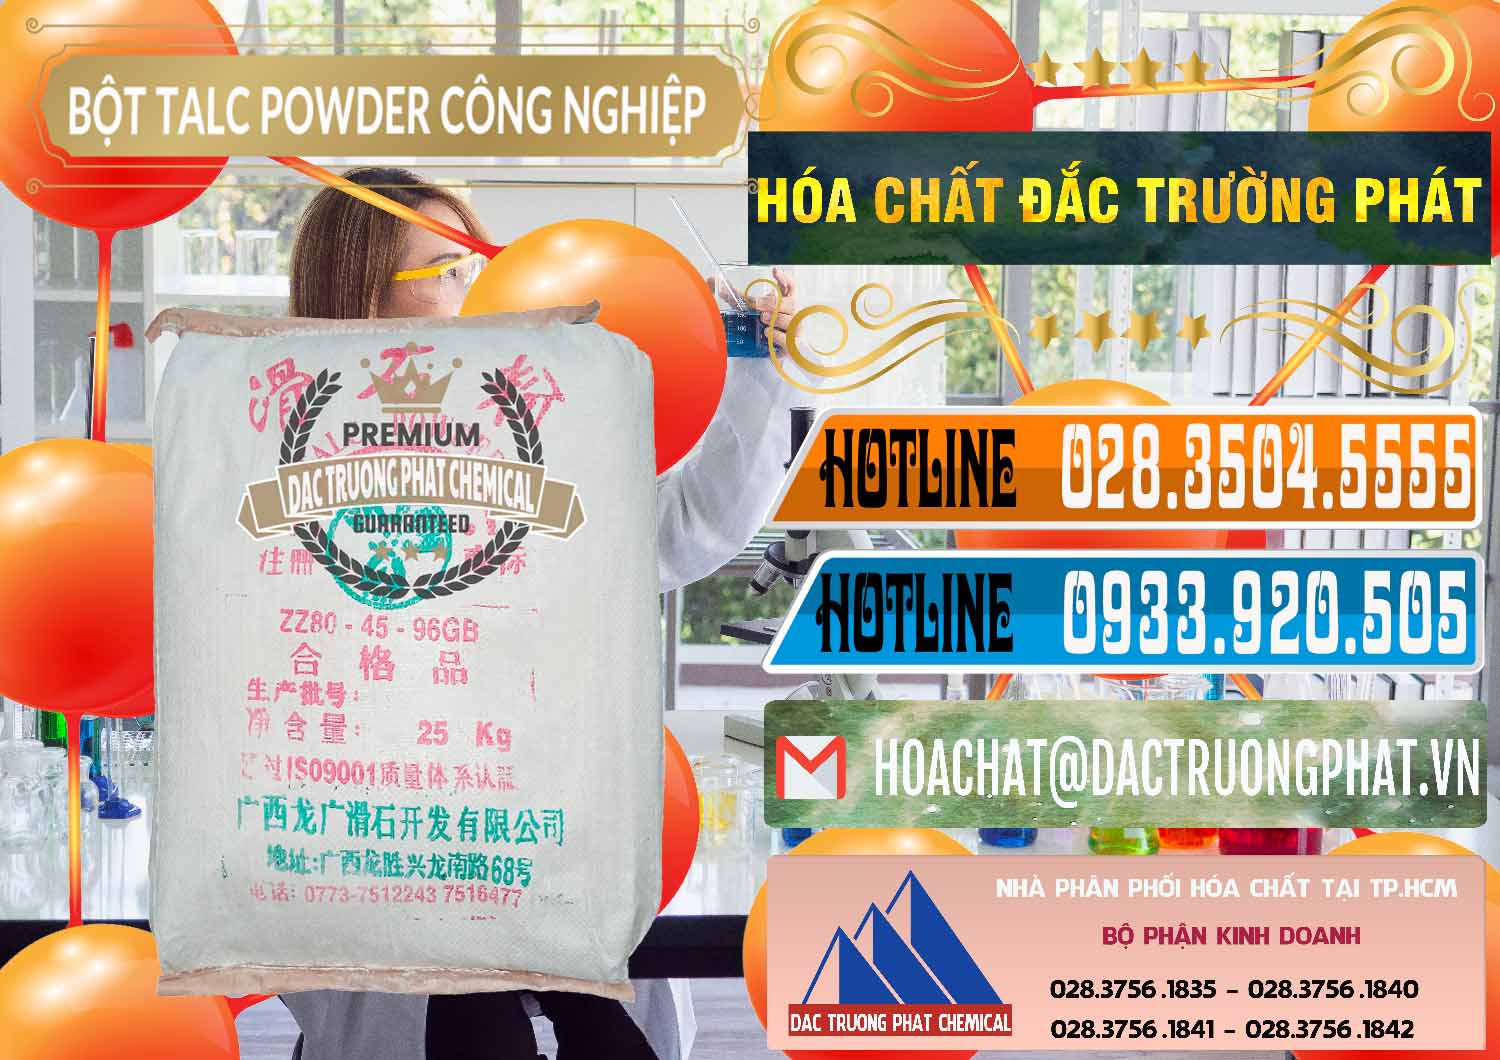 Chuyên bán ( cung cấp ) Bột Talc Powder Công Nghiệp Trung Quốc China - 0037 - Cty phân phối và kinh doanh hóa chất tại TP.HCM - stmp.net